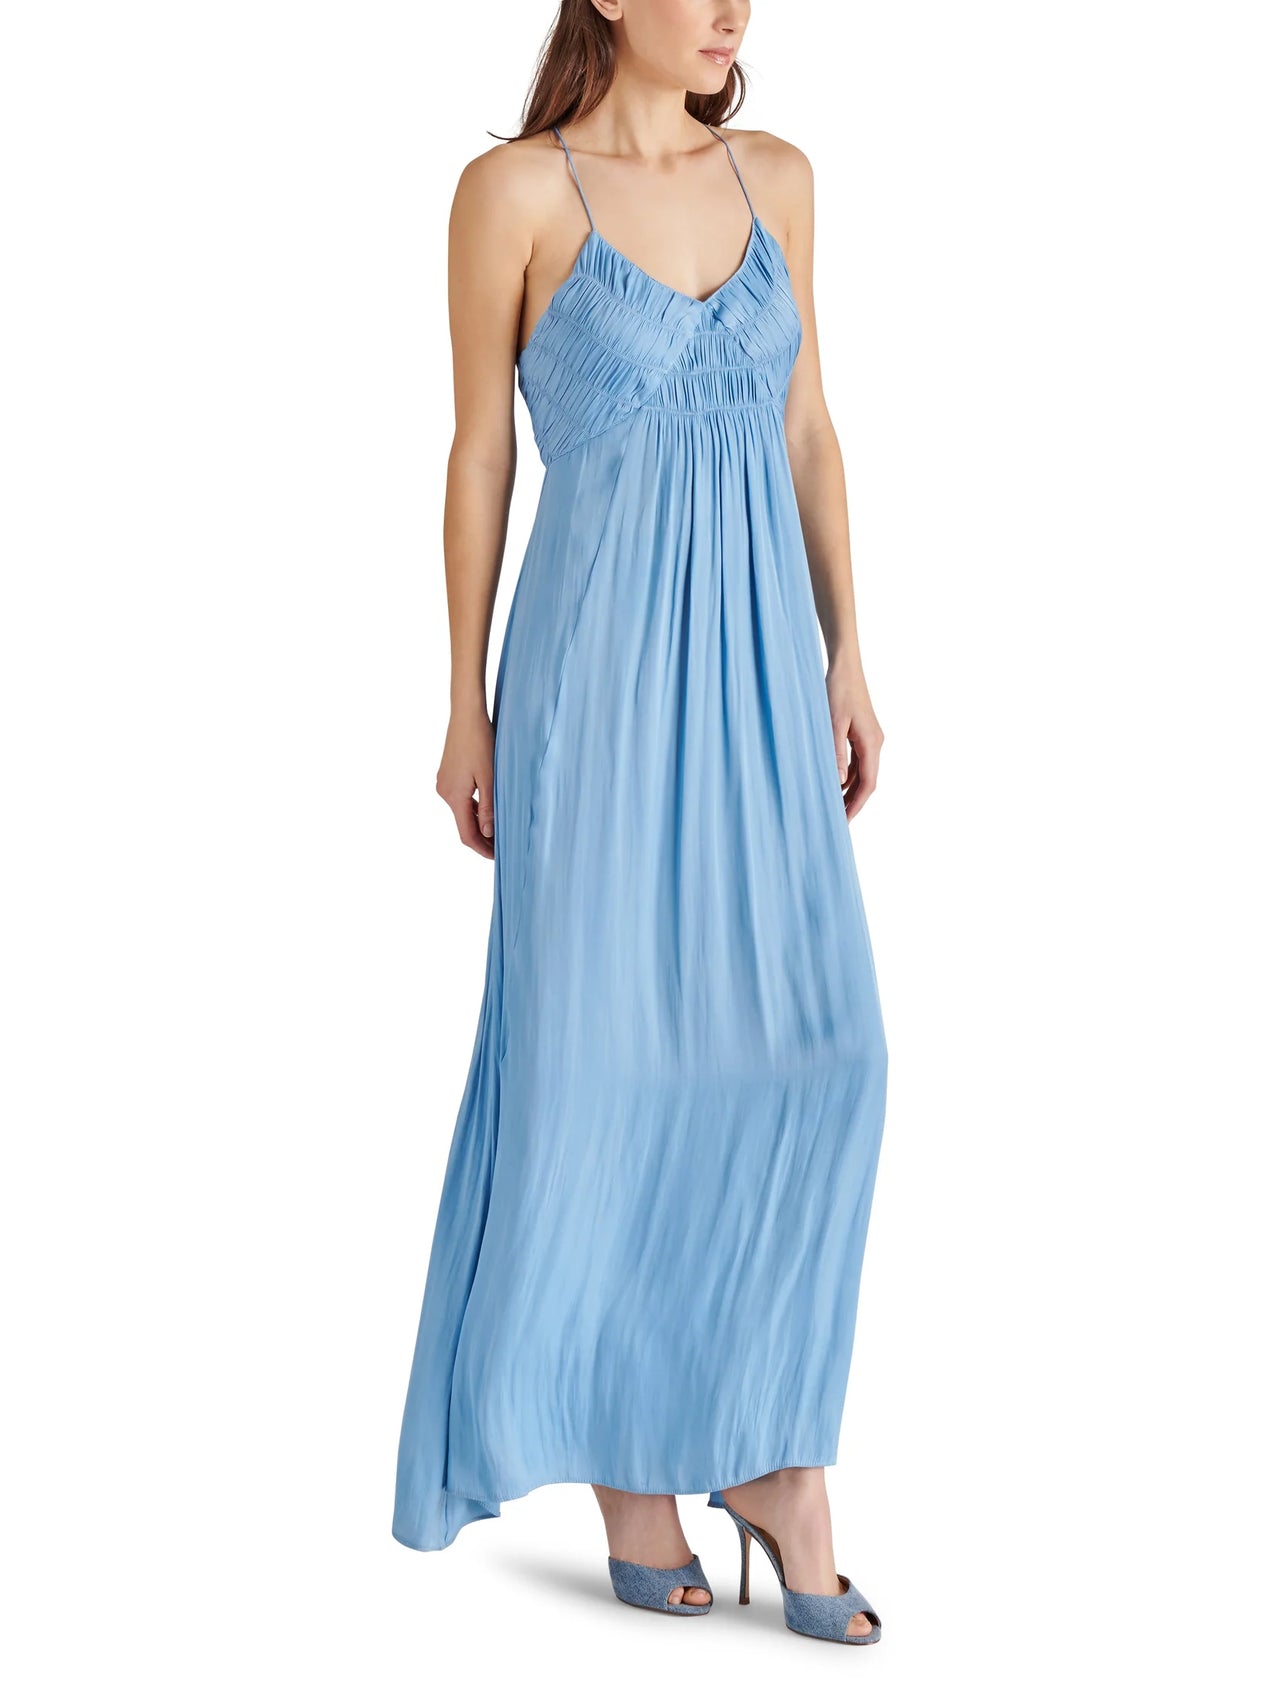 Brianna Maxi Dress Blue Dusk, Maxi Dress by Steve Madden | LIT Boutique